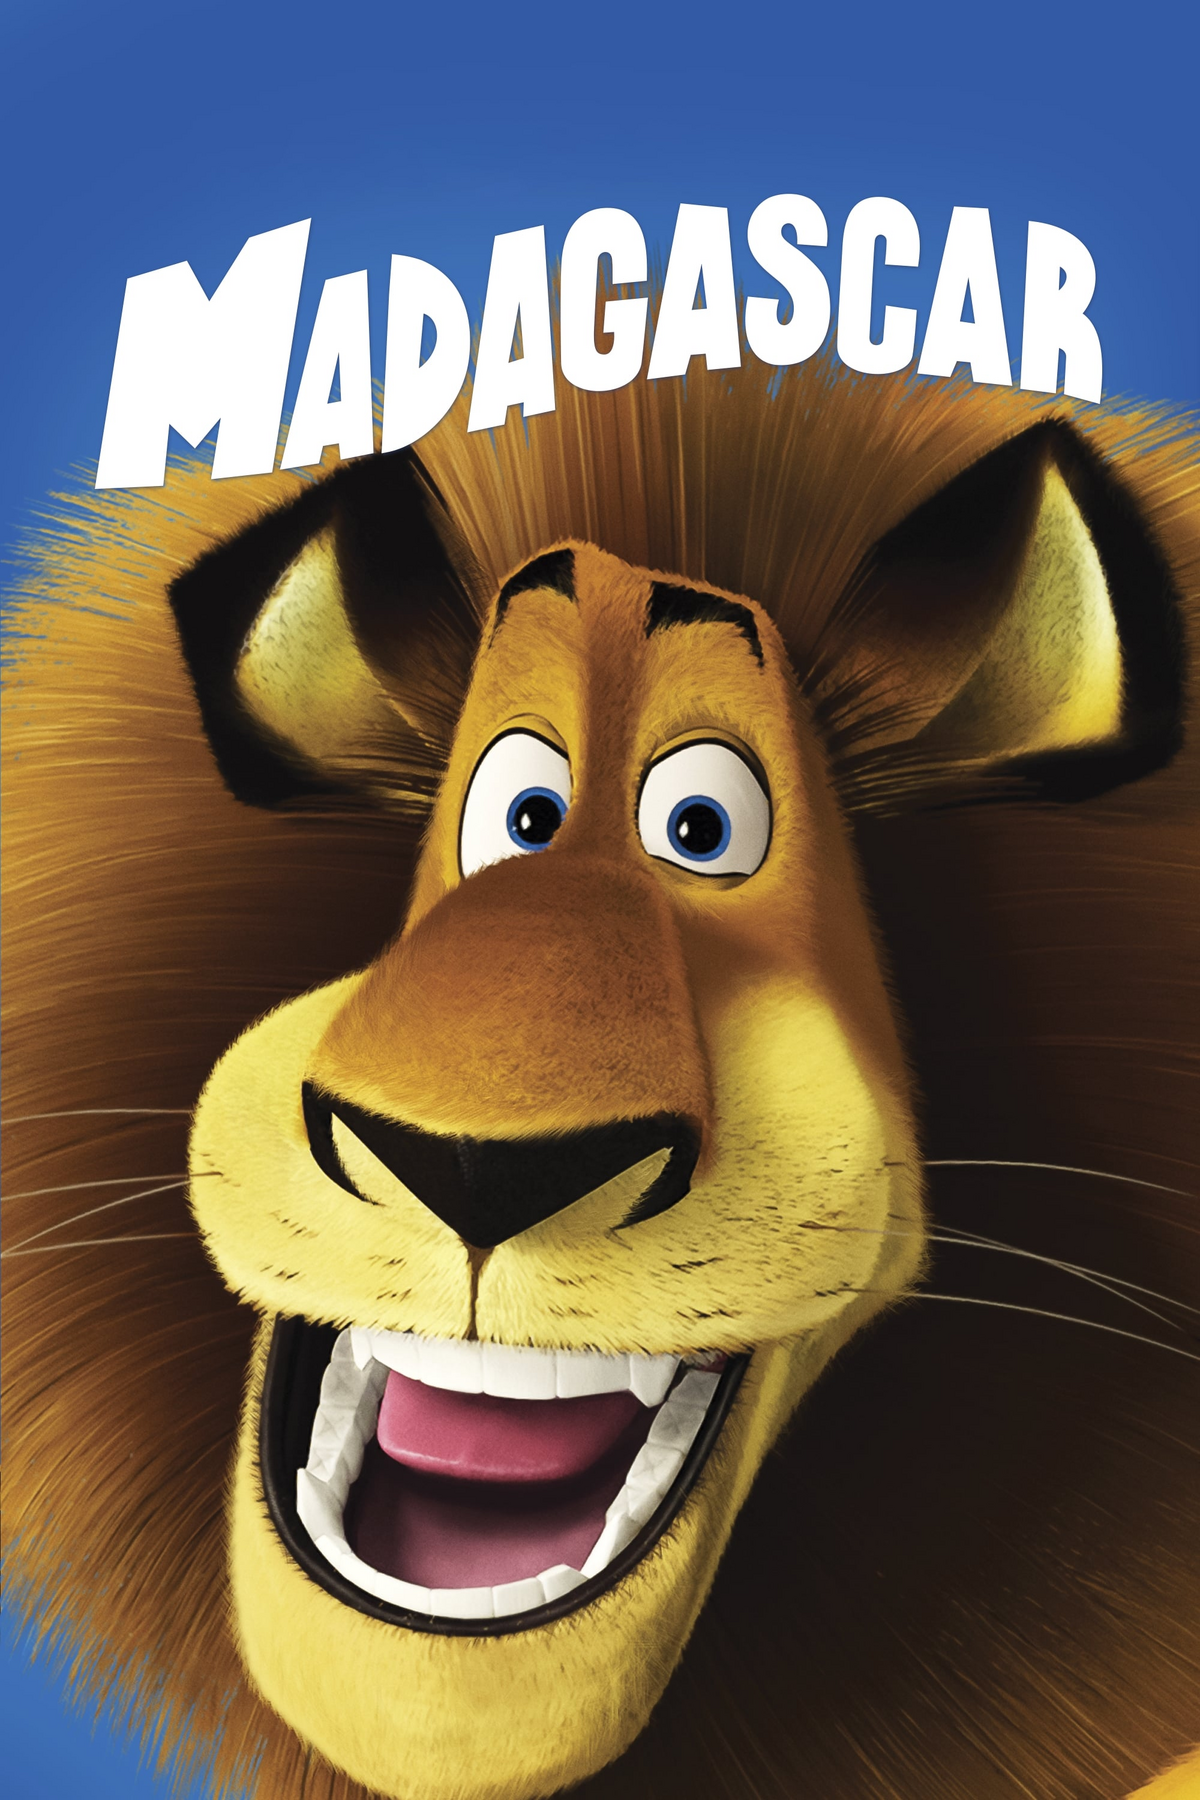 Madagascar (filme) – Wikipédia, a enciclopédia livre